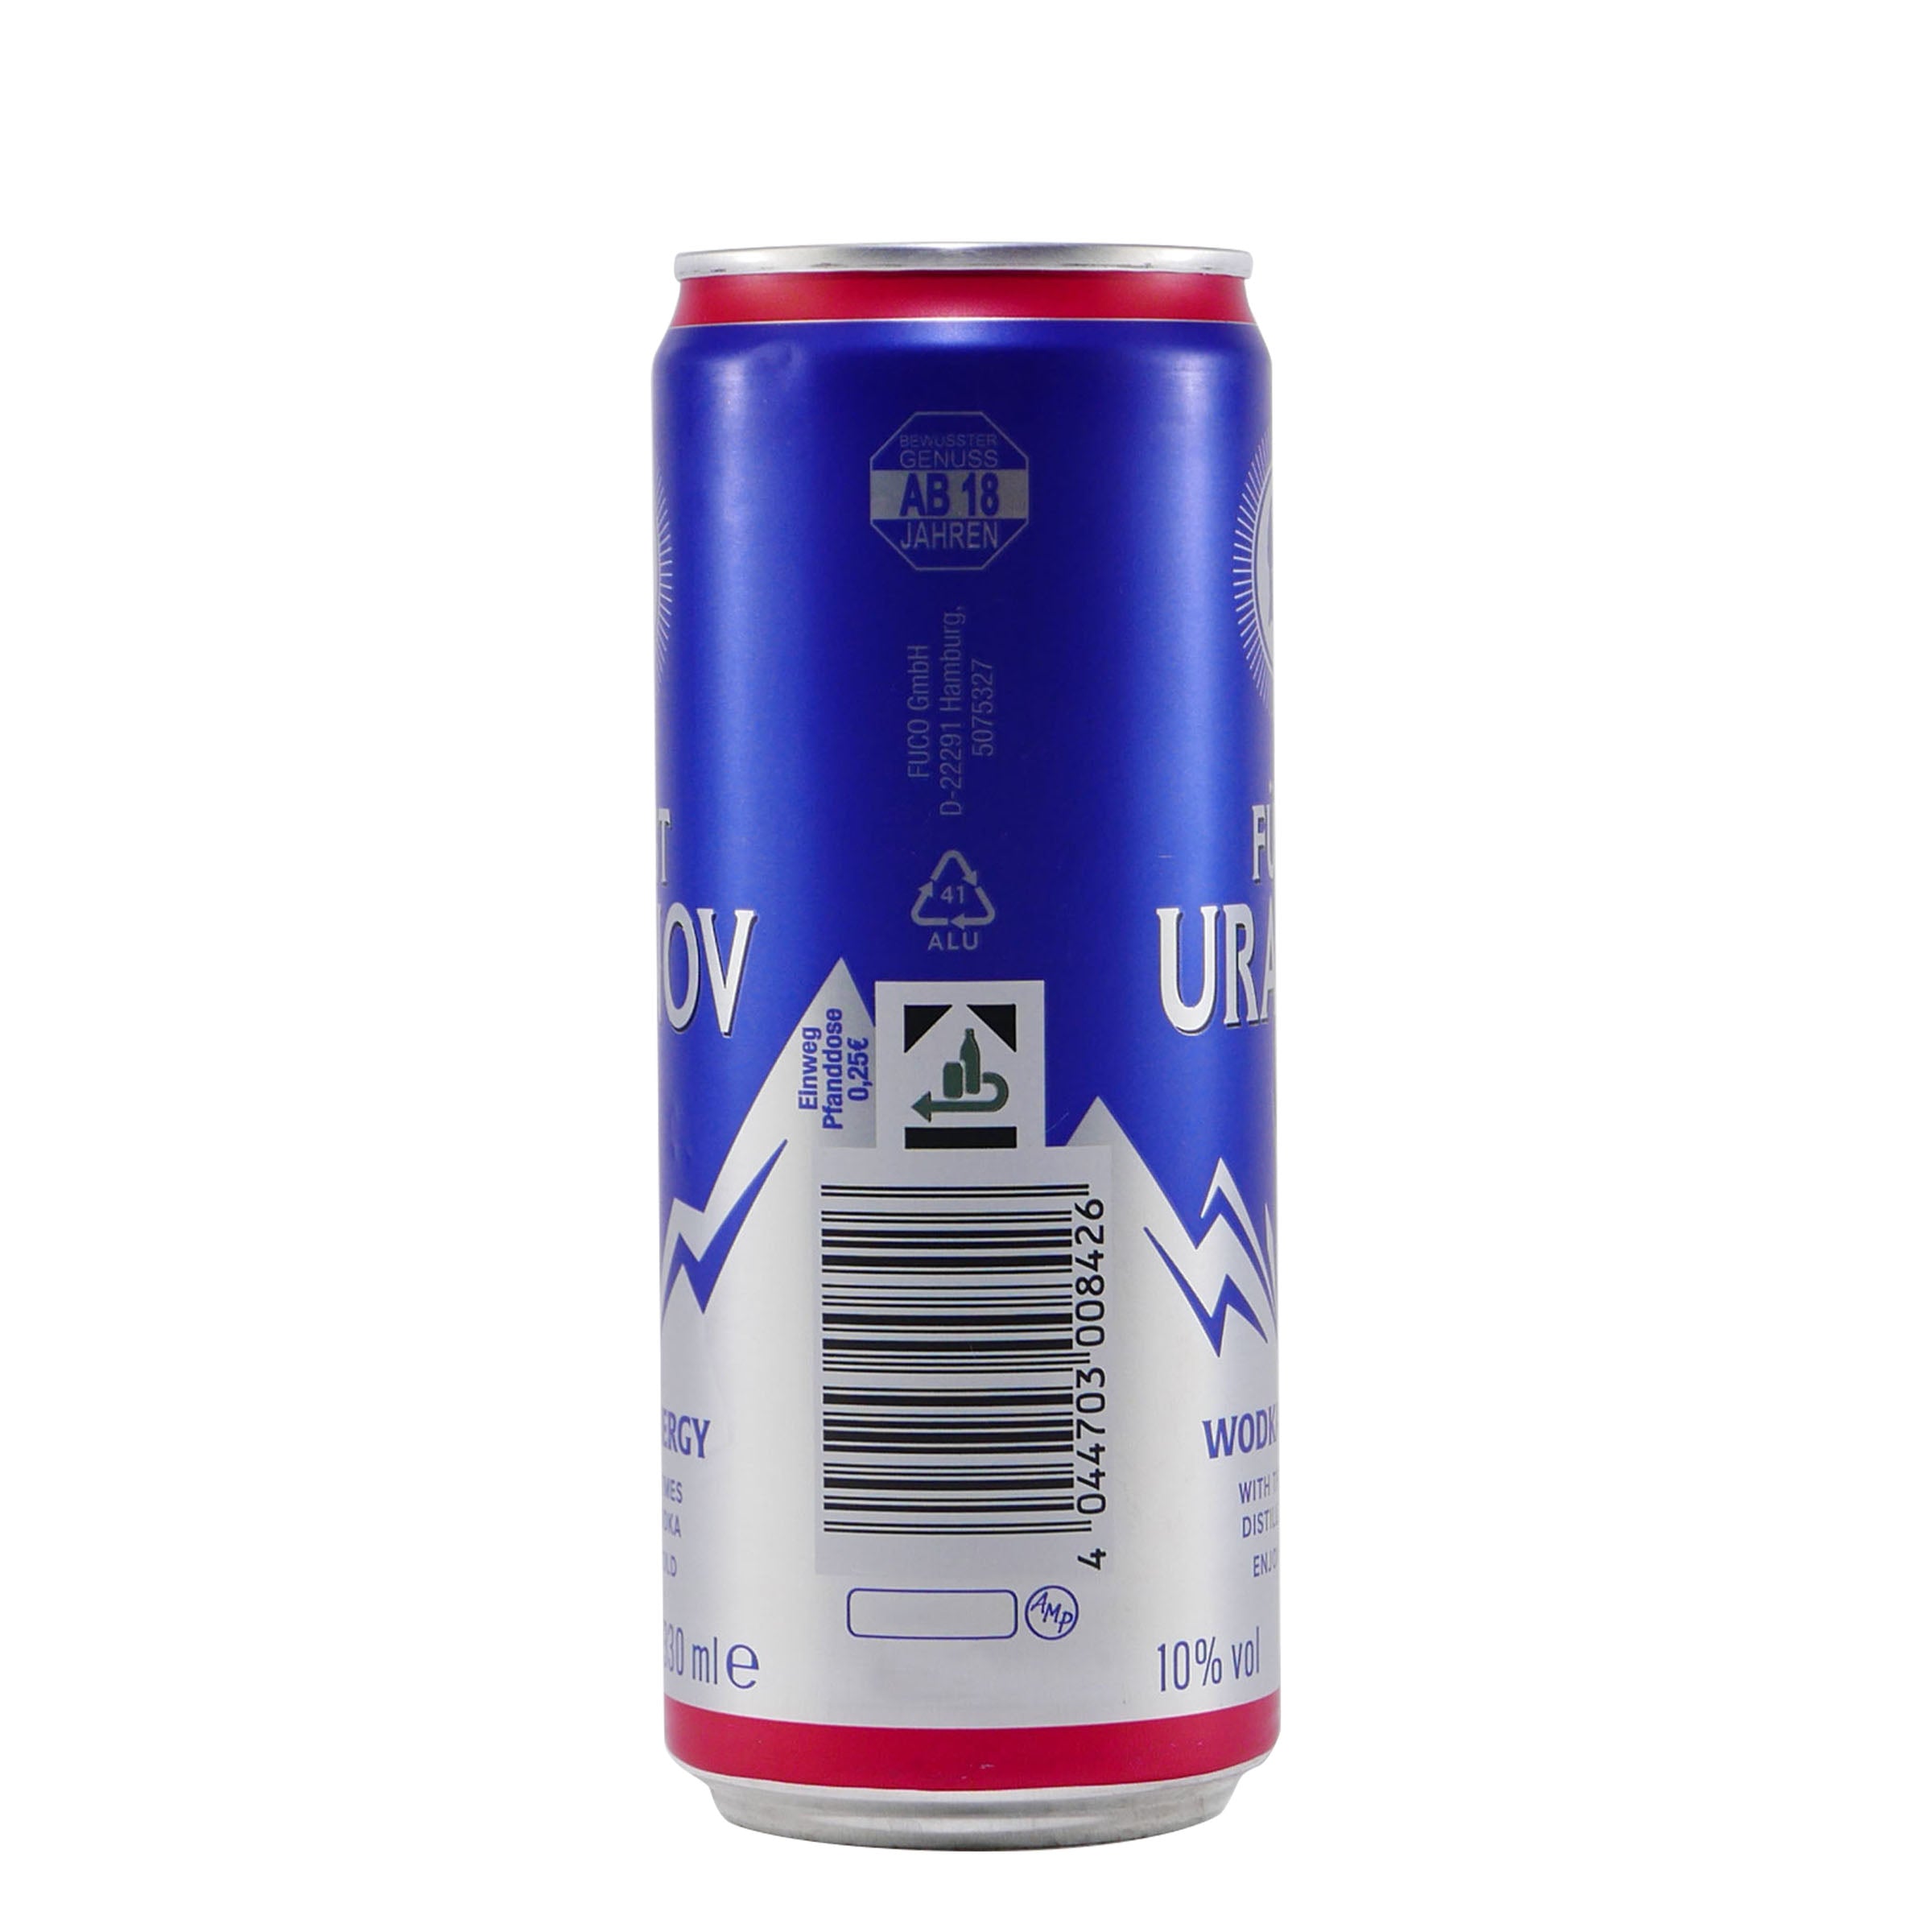 Fürst Uranov Wodka Energy (12 x 0,33L)